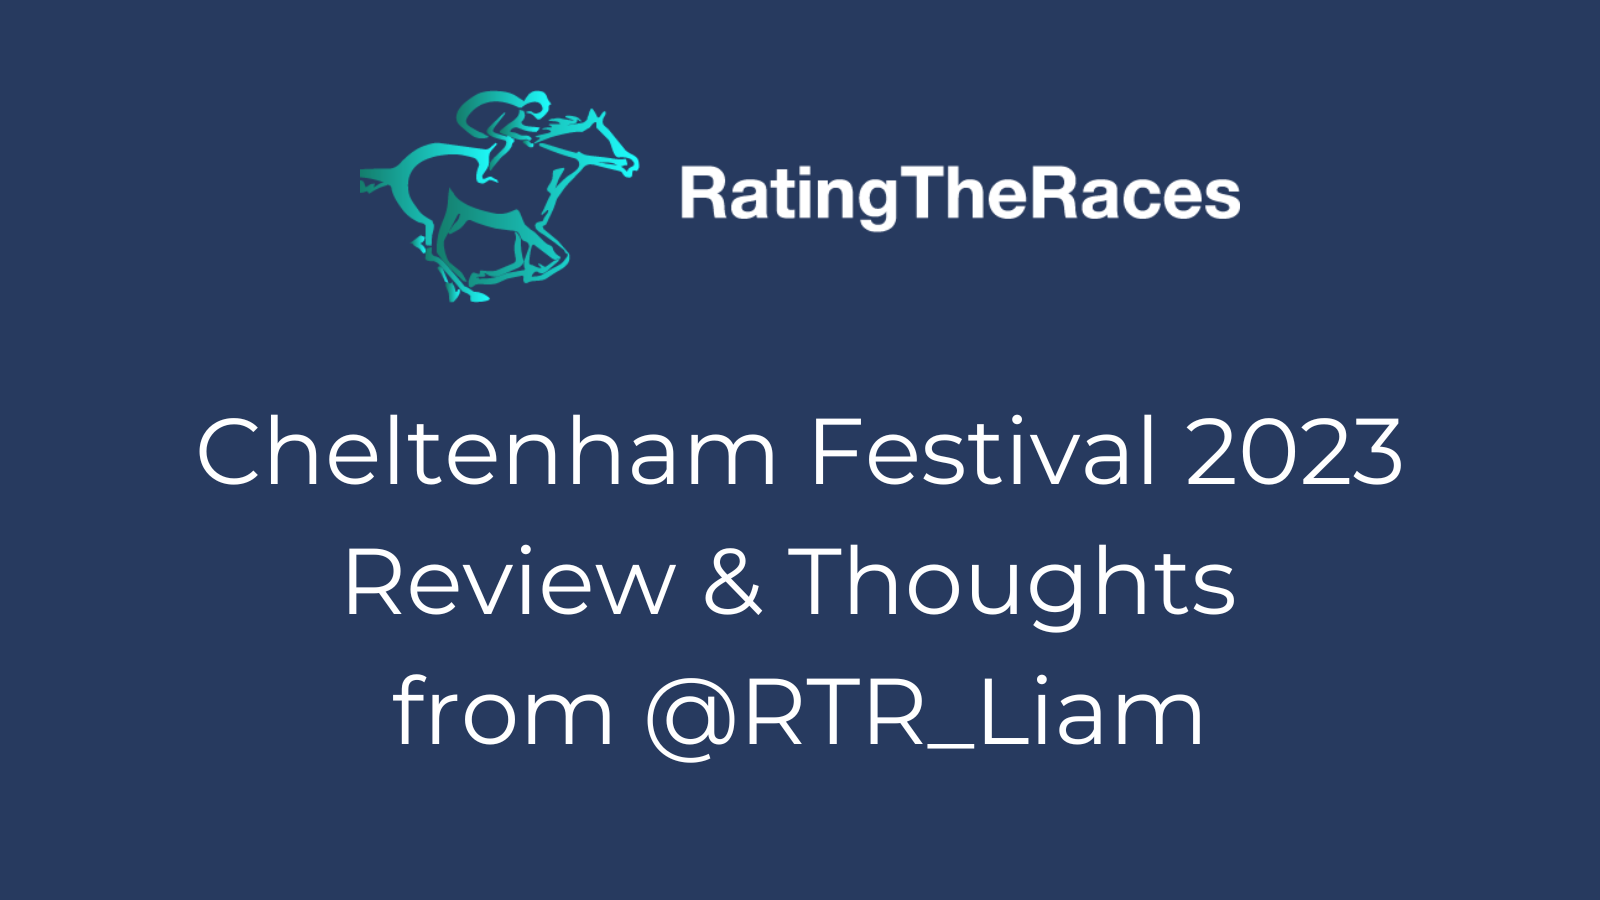 Cheltenham Festival 2023 Review